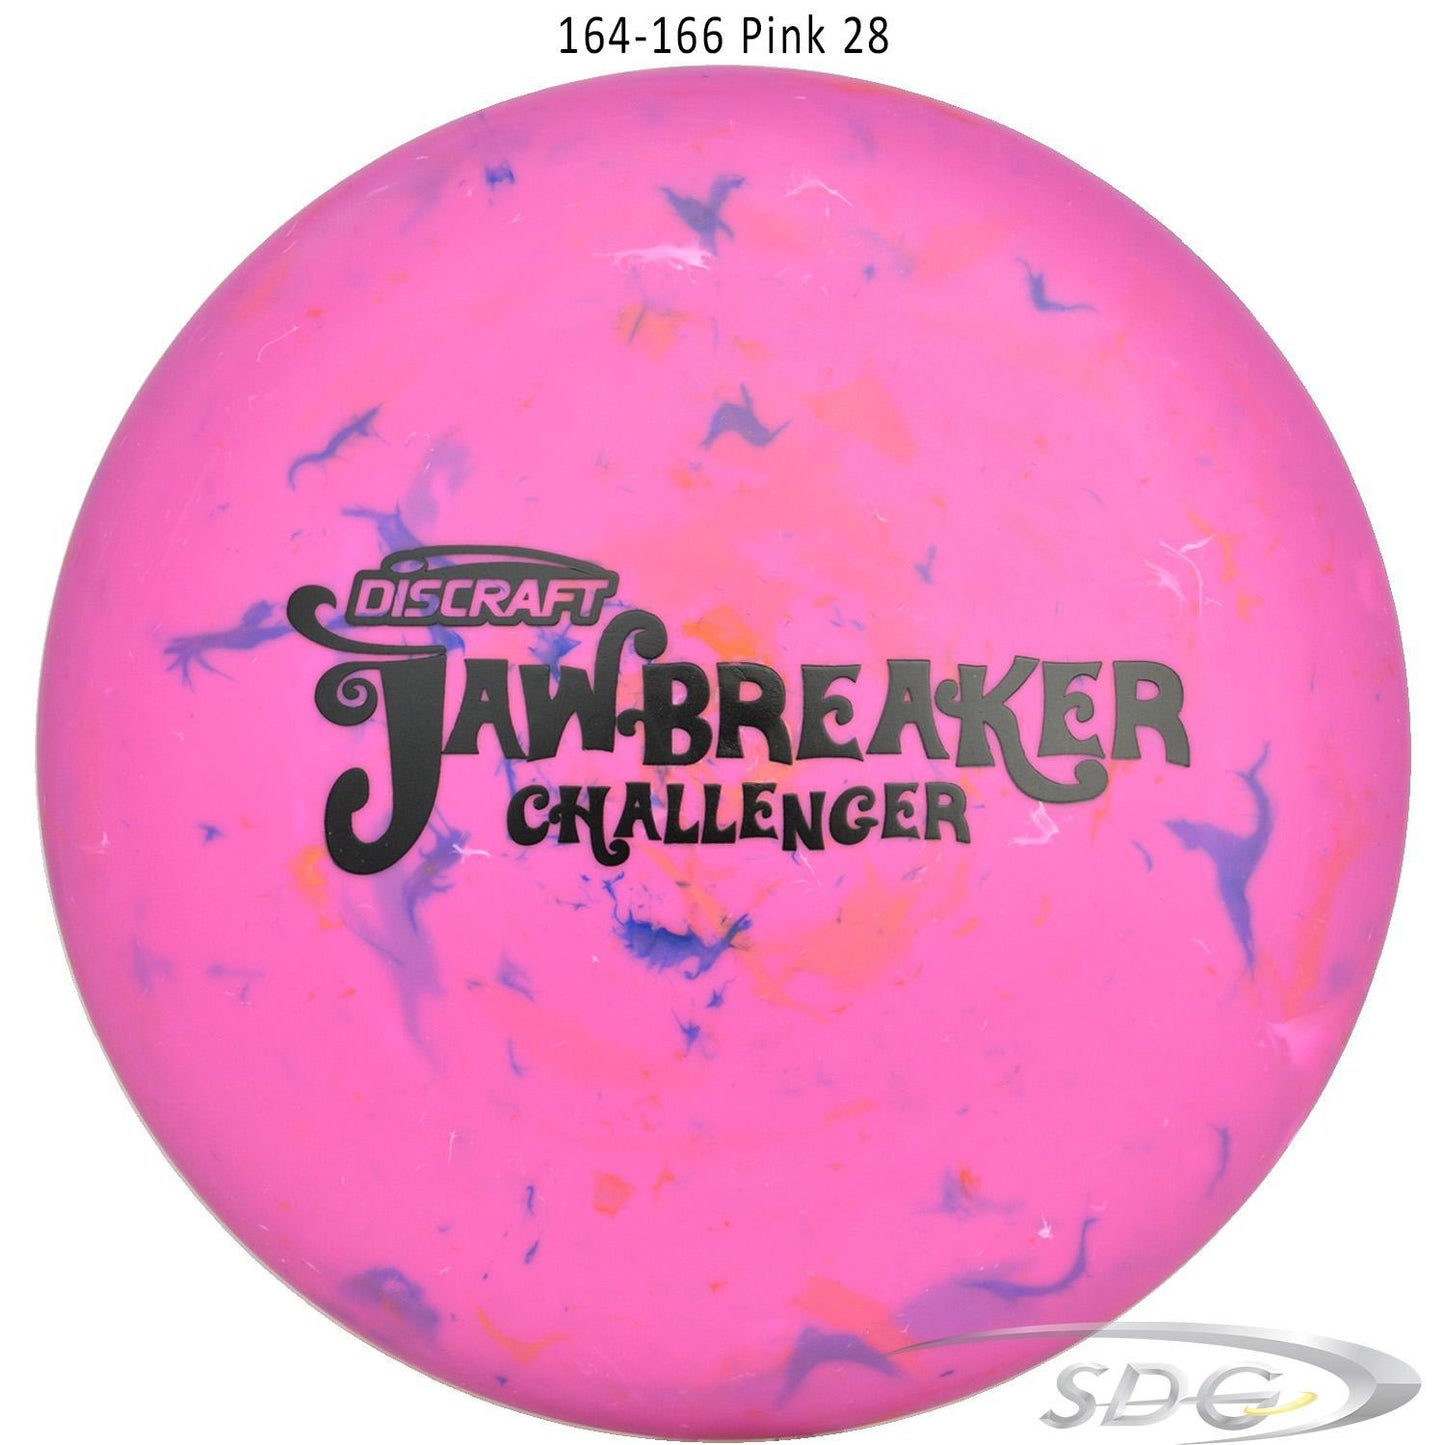 discraft-jawbreaker-challenger-disc-golf-putter 164-166 Pink 28 